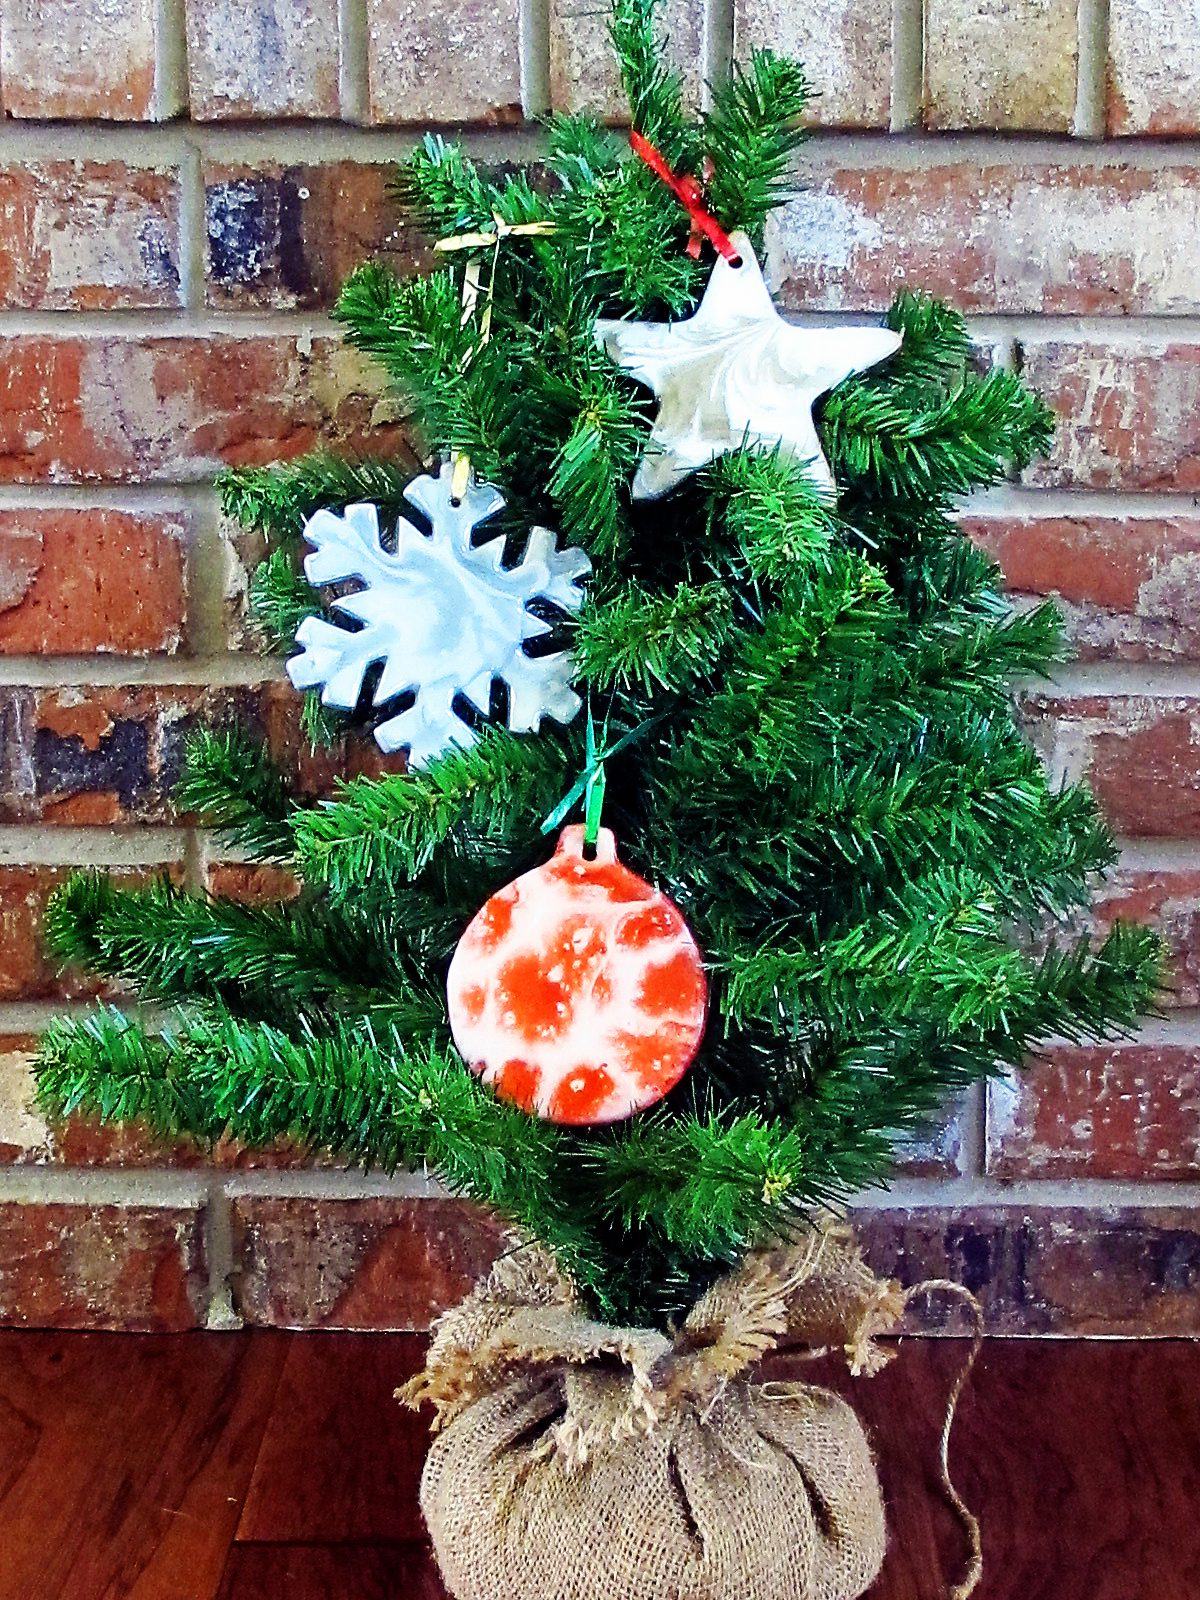 Three resin ornaments on miniature Christmas tree.